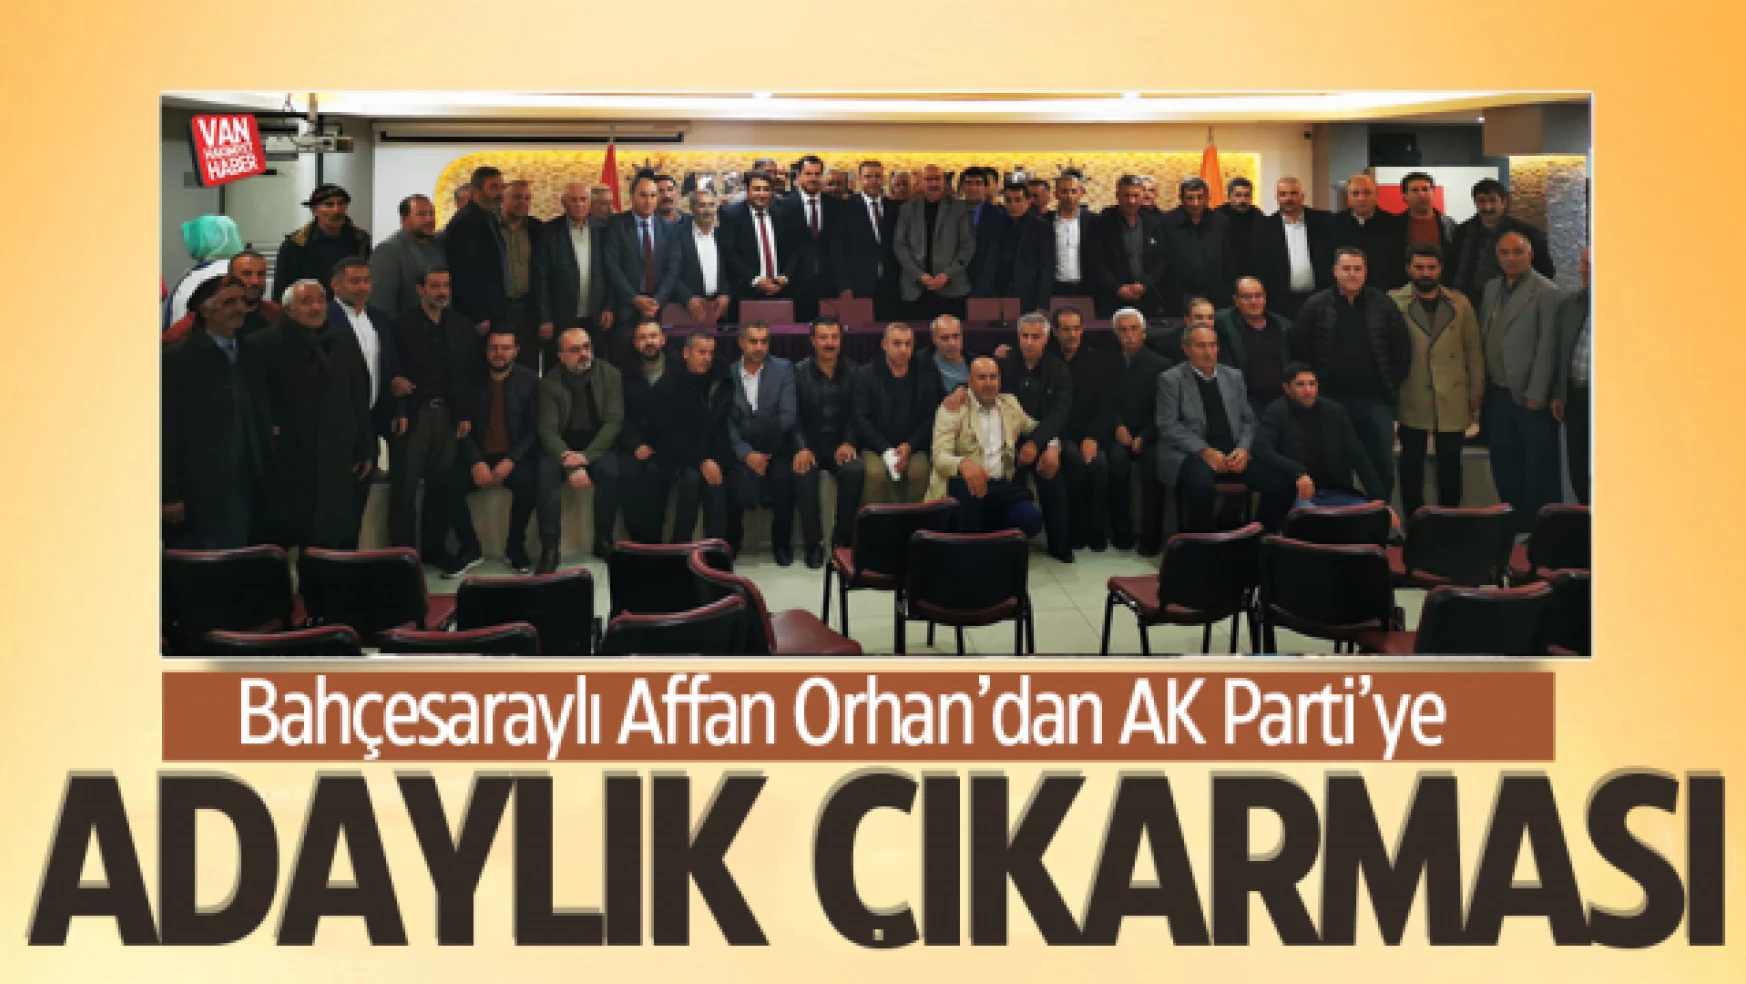 Affan Orhan AK Parti'ye aday adaylık başvurusu yaptı